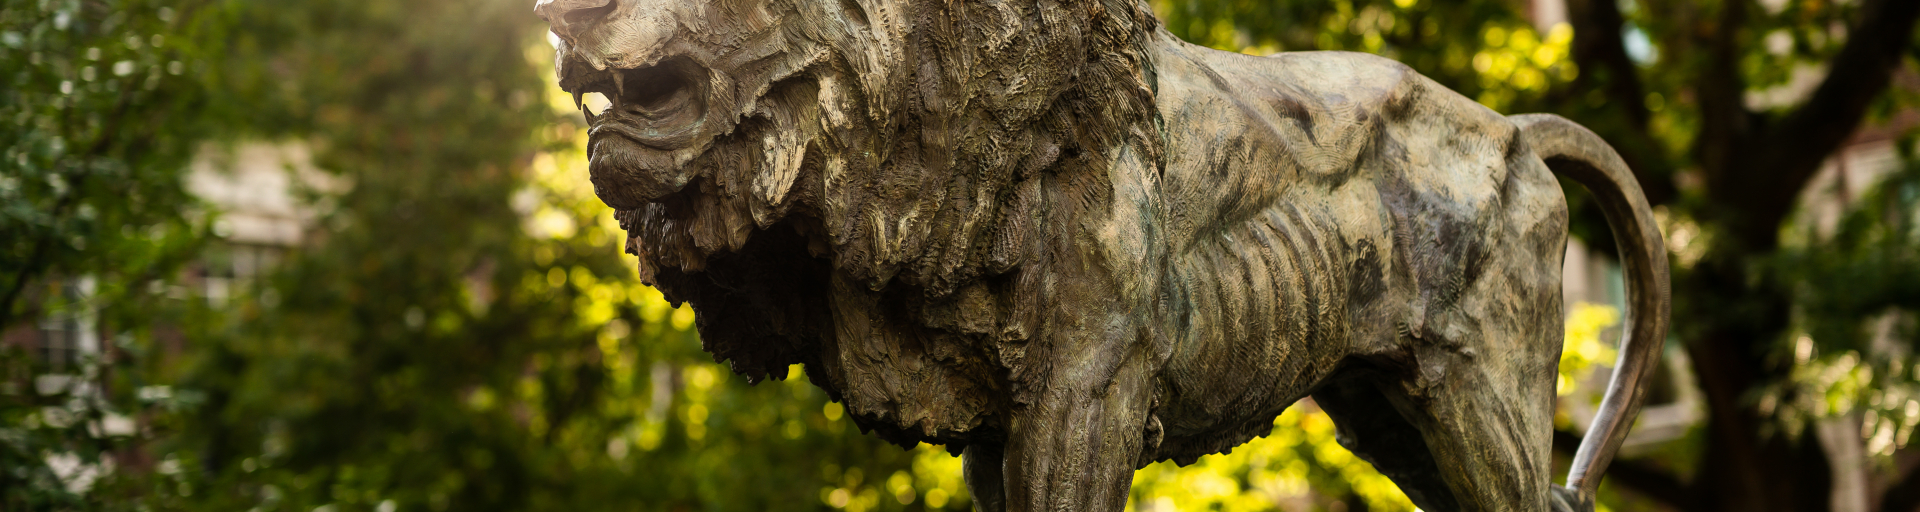 Columbia campus lion statue